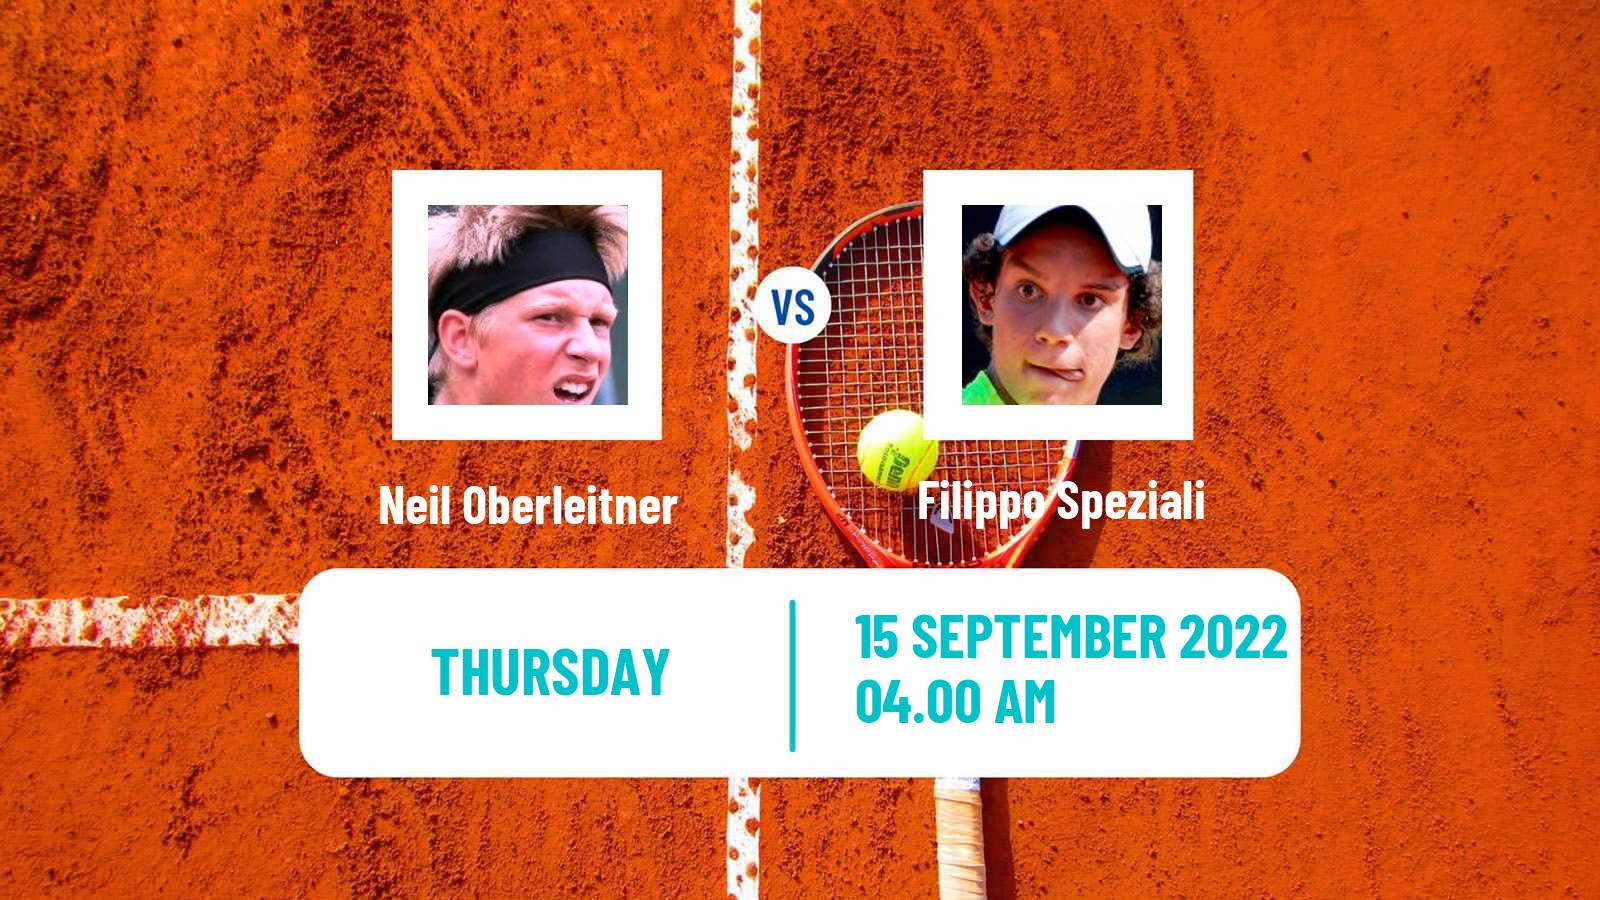 Tennis ITF Tournaments Neil Oberleitner - Filippo Speziali